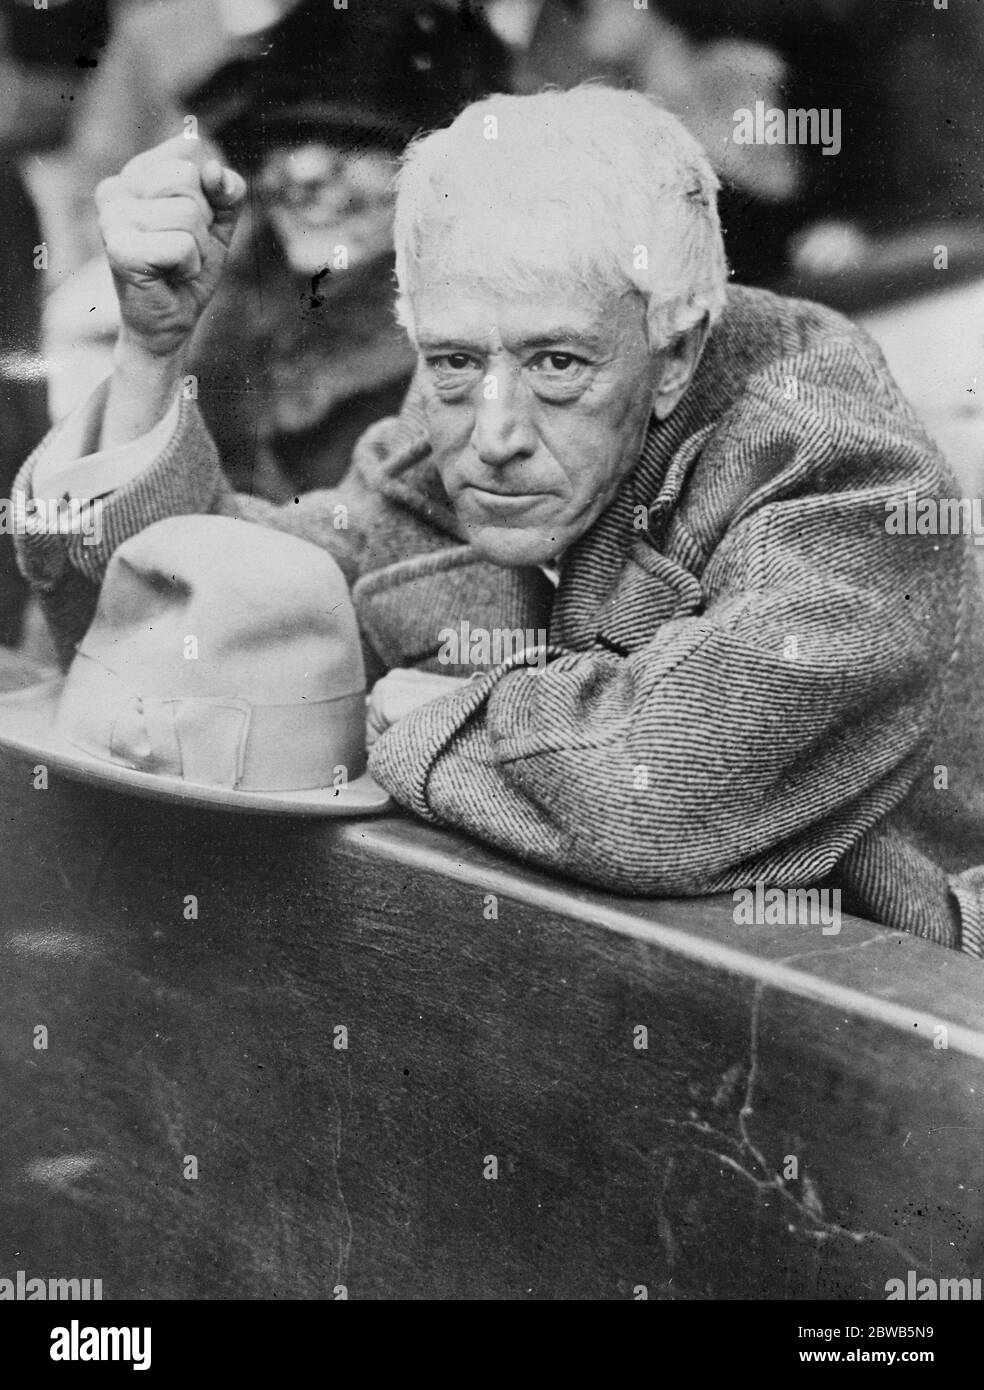 Juge comme fan de baseball . Juge Landis , un passionné de baseball , photographié lors d'un incident passionnant dans le match entre les Giants et les Yankees au Yankee Stadium , New York . 20 octobre 1923 Banque D'Images